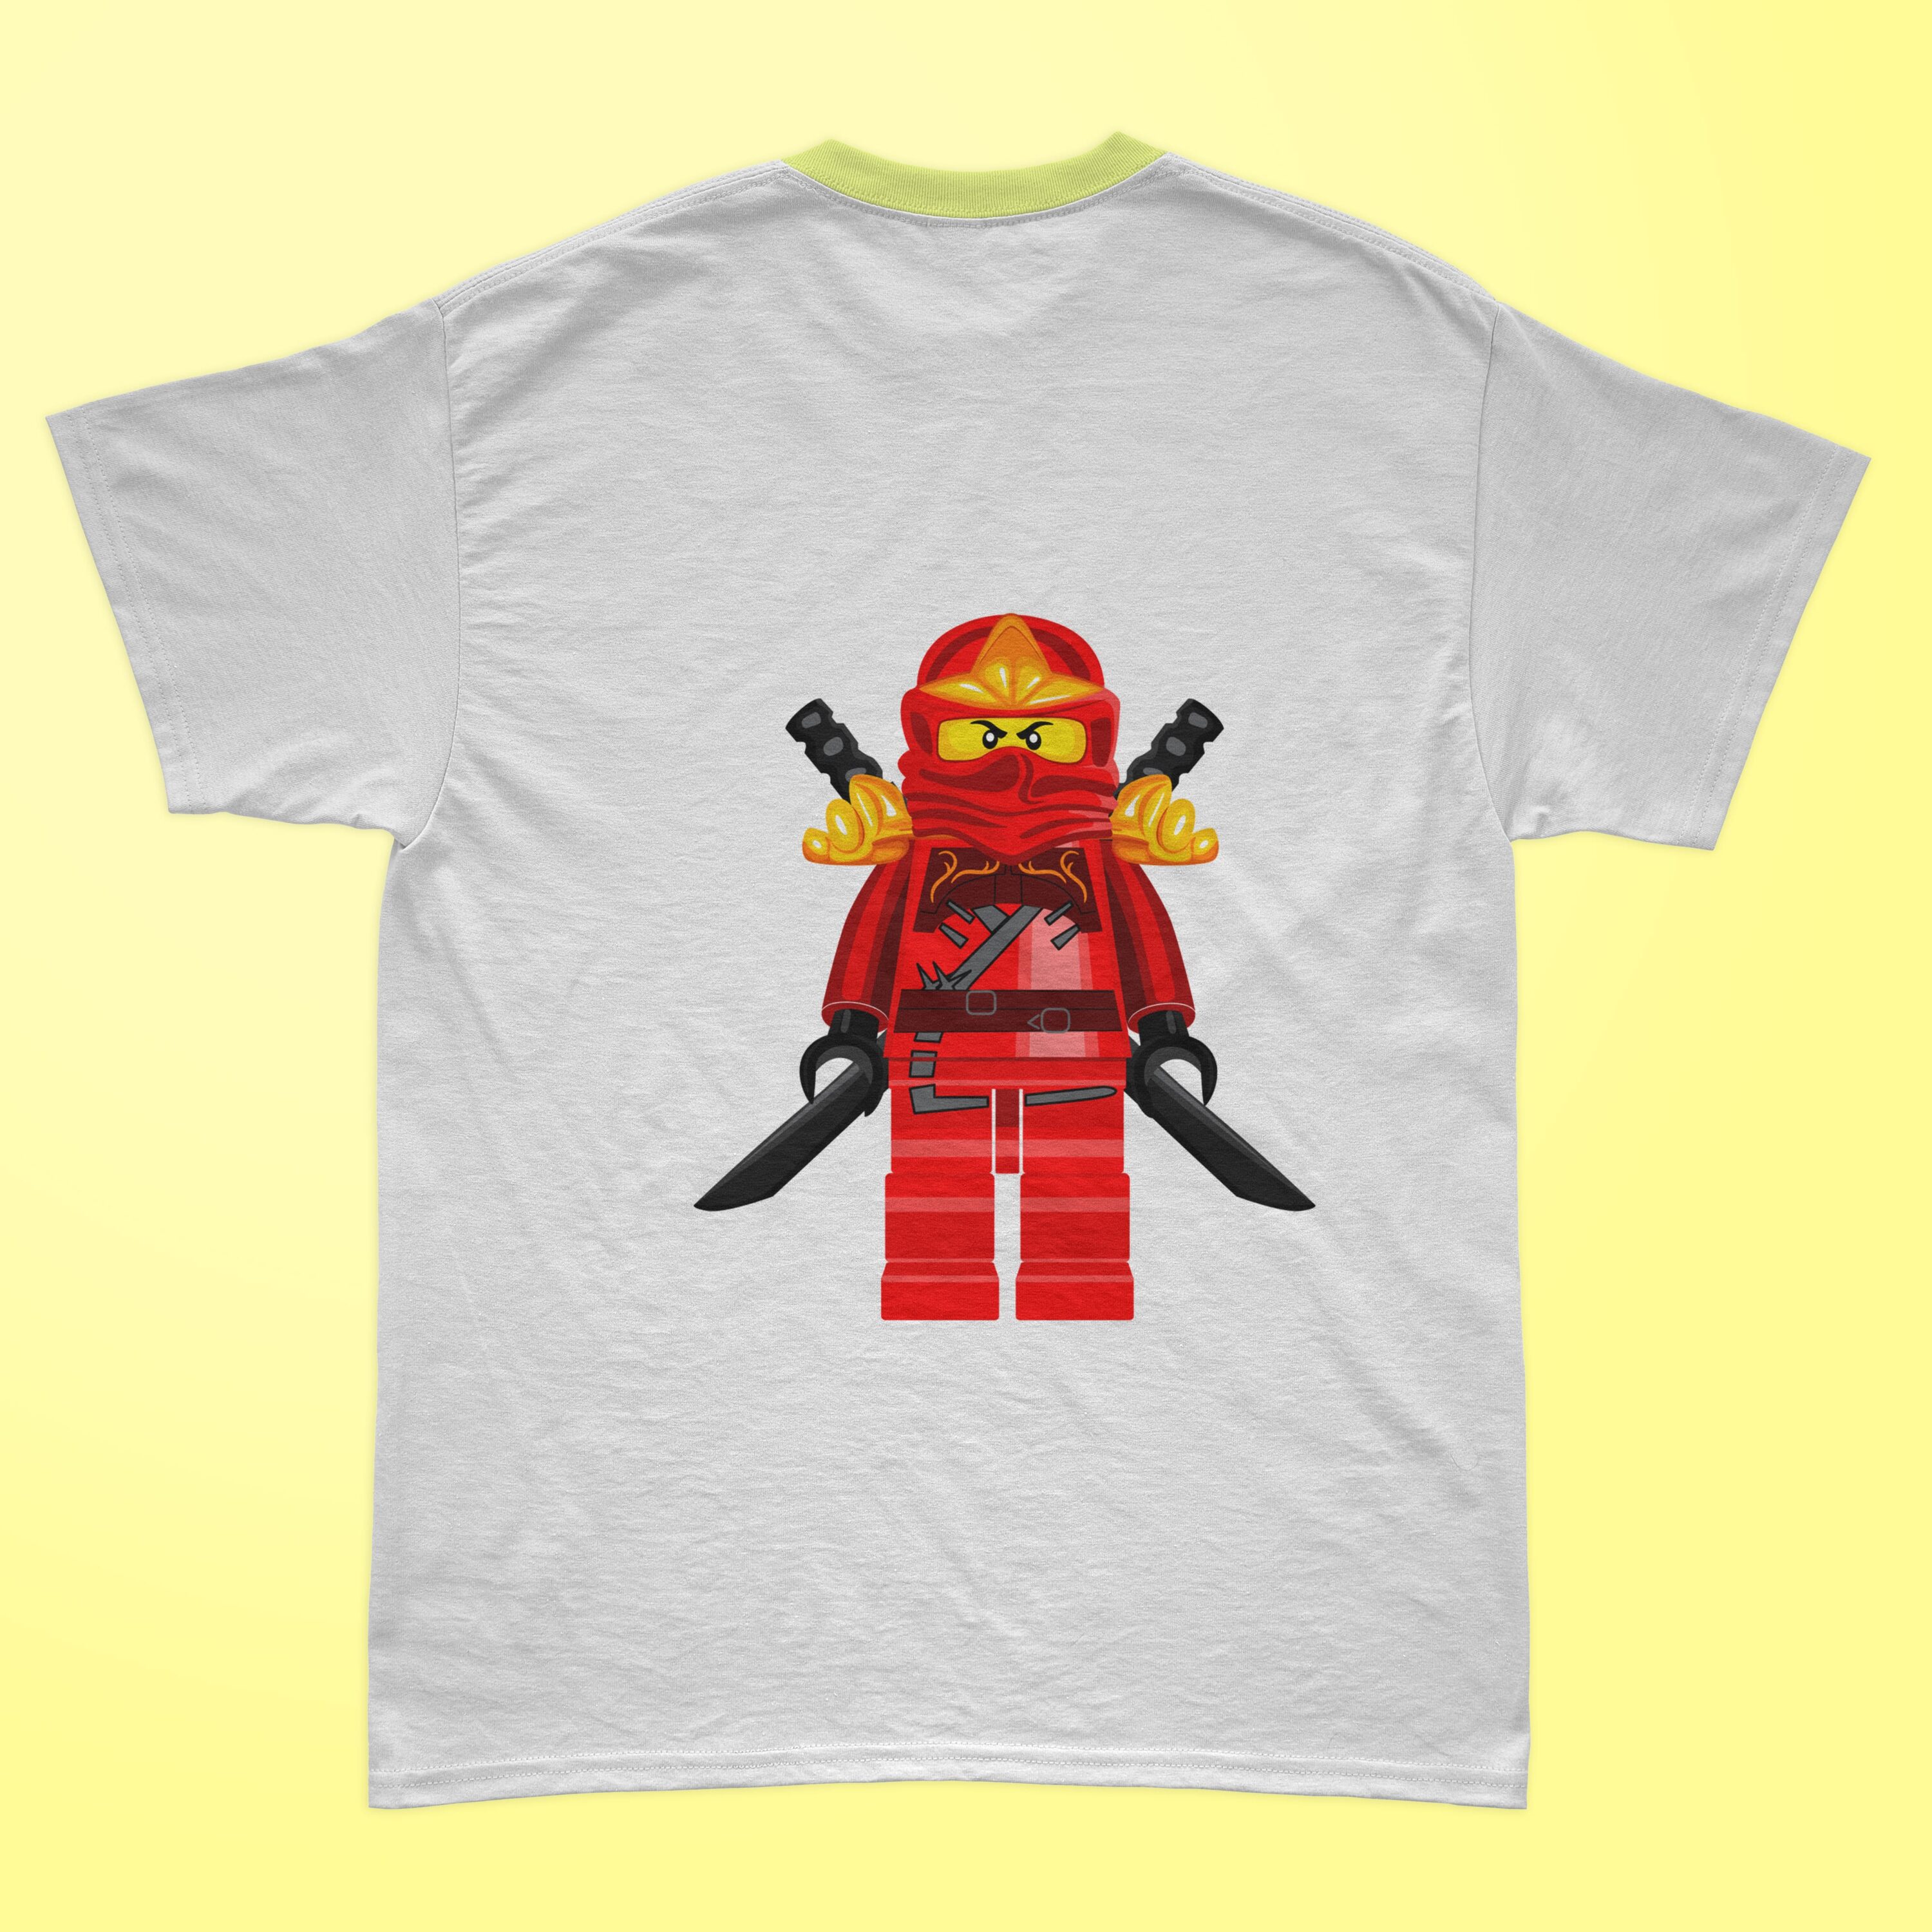 Red lego ninjago printed on the t-shirt.